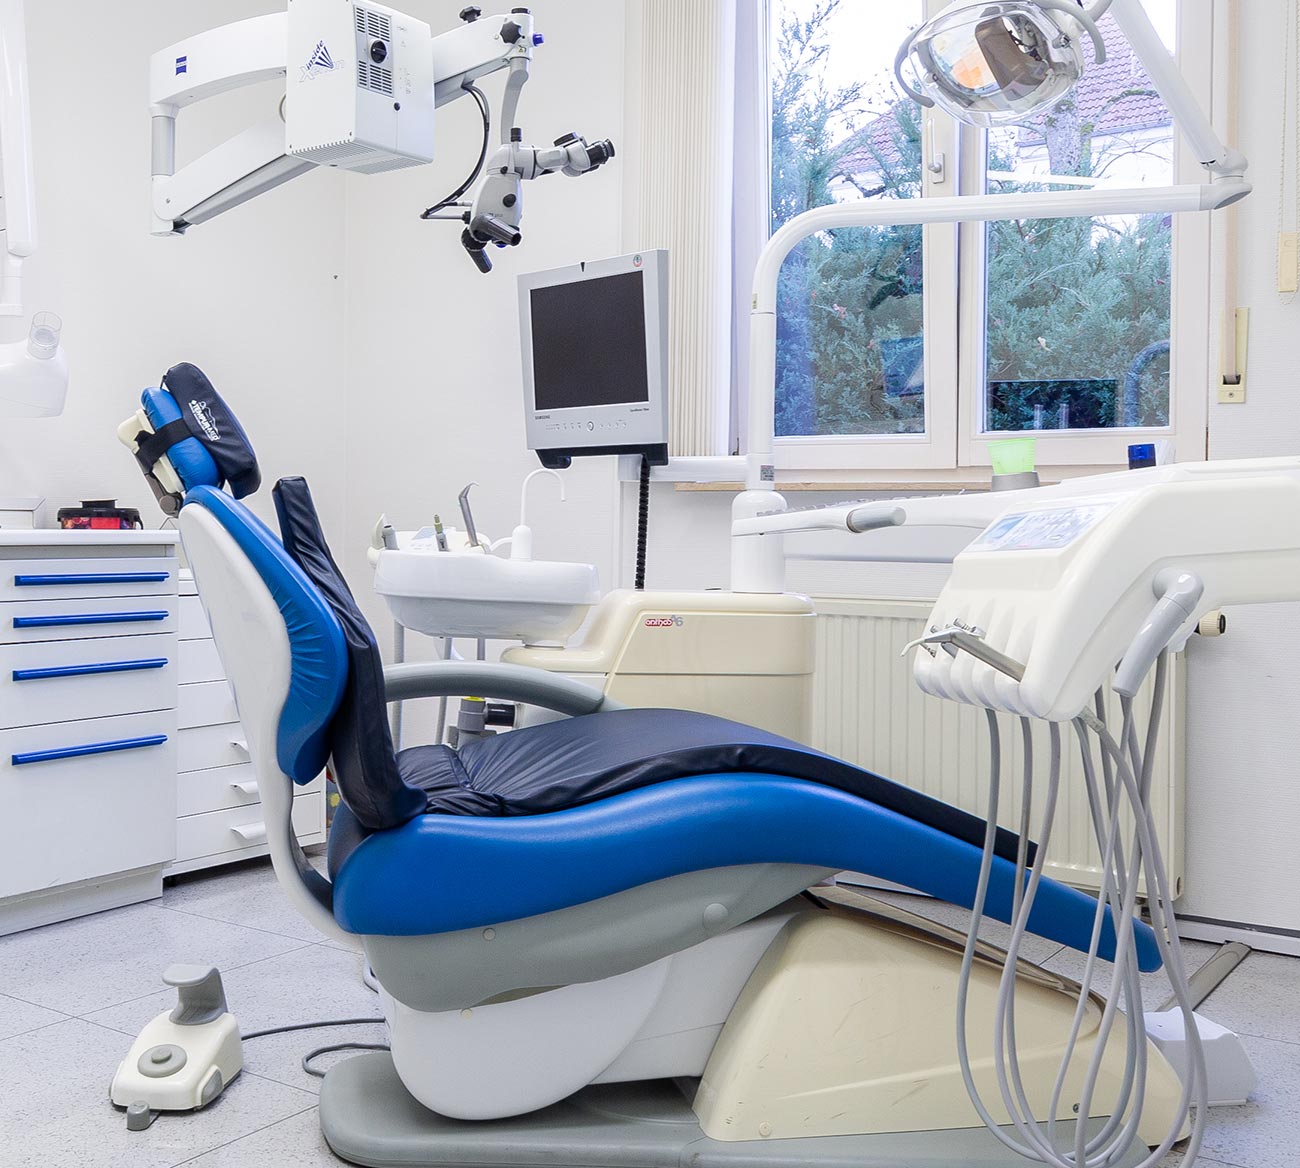 Zahnarztpraxis Totolici - Behandlungszimmer mit blauem Behandlungsstuhl